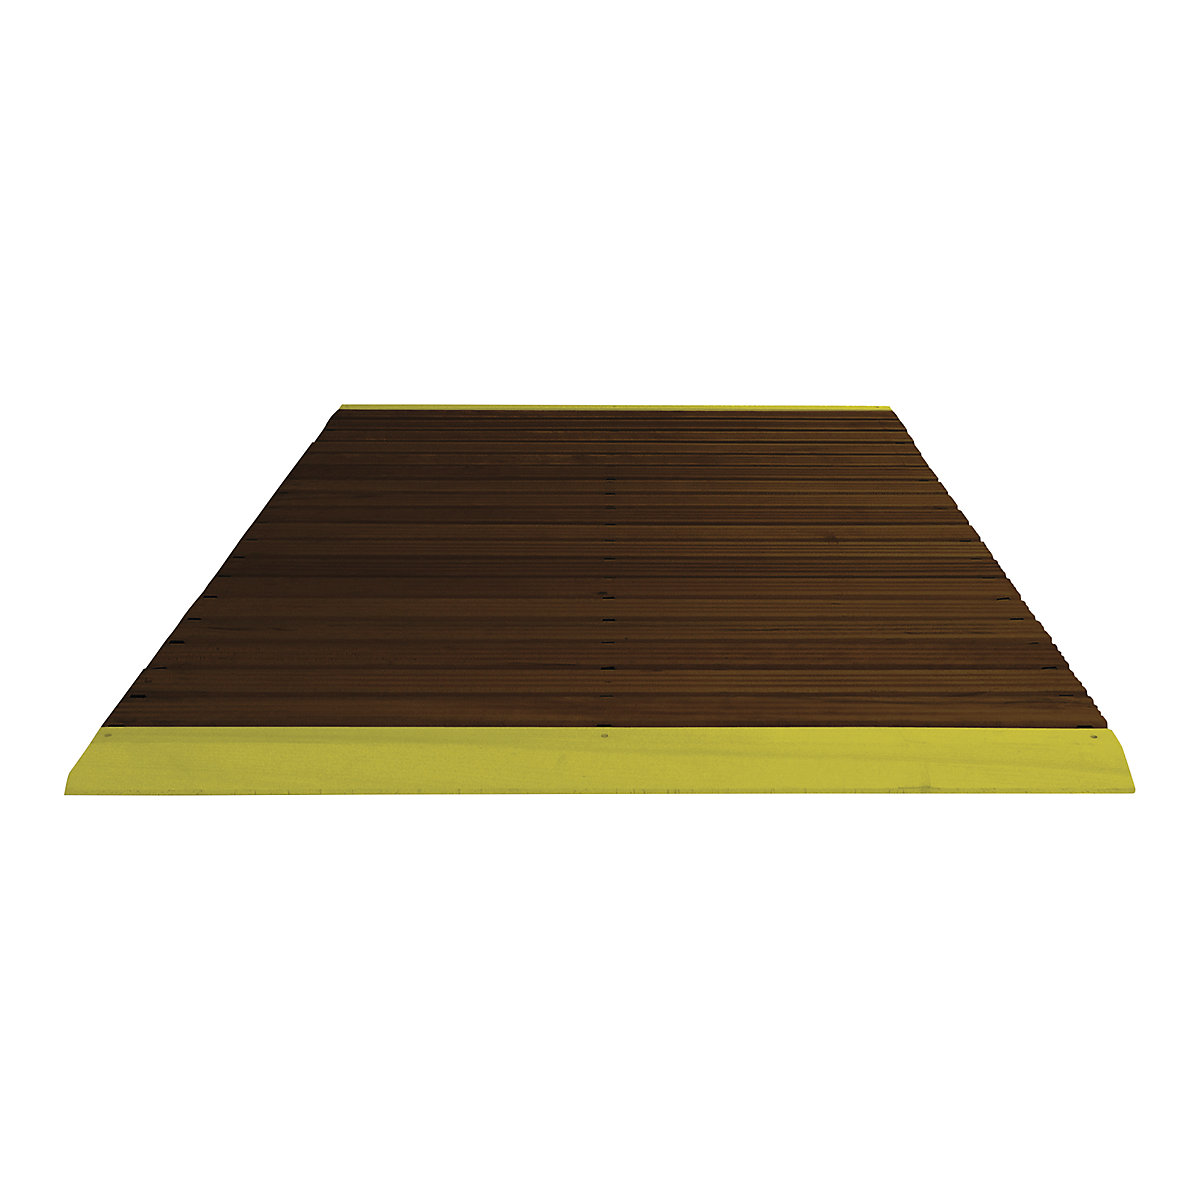 Holzlaufrost dunkel gebeizt, pro lfd. m, mit Anschrägung, inkl. gelber Auffahrkanten, Breite 1200 mm-5